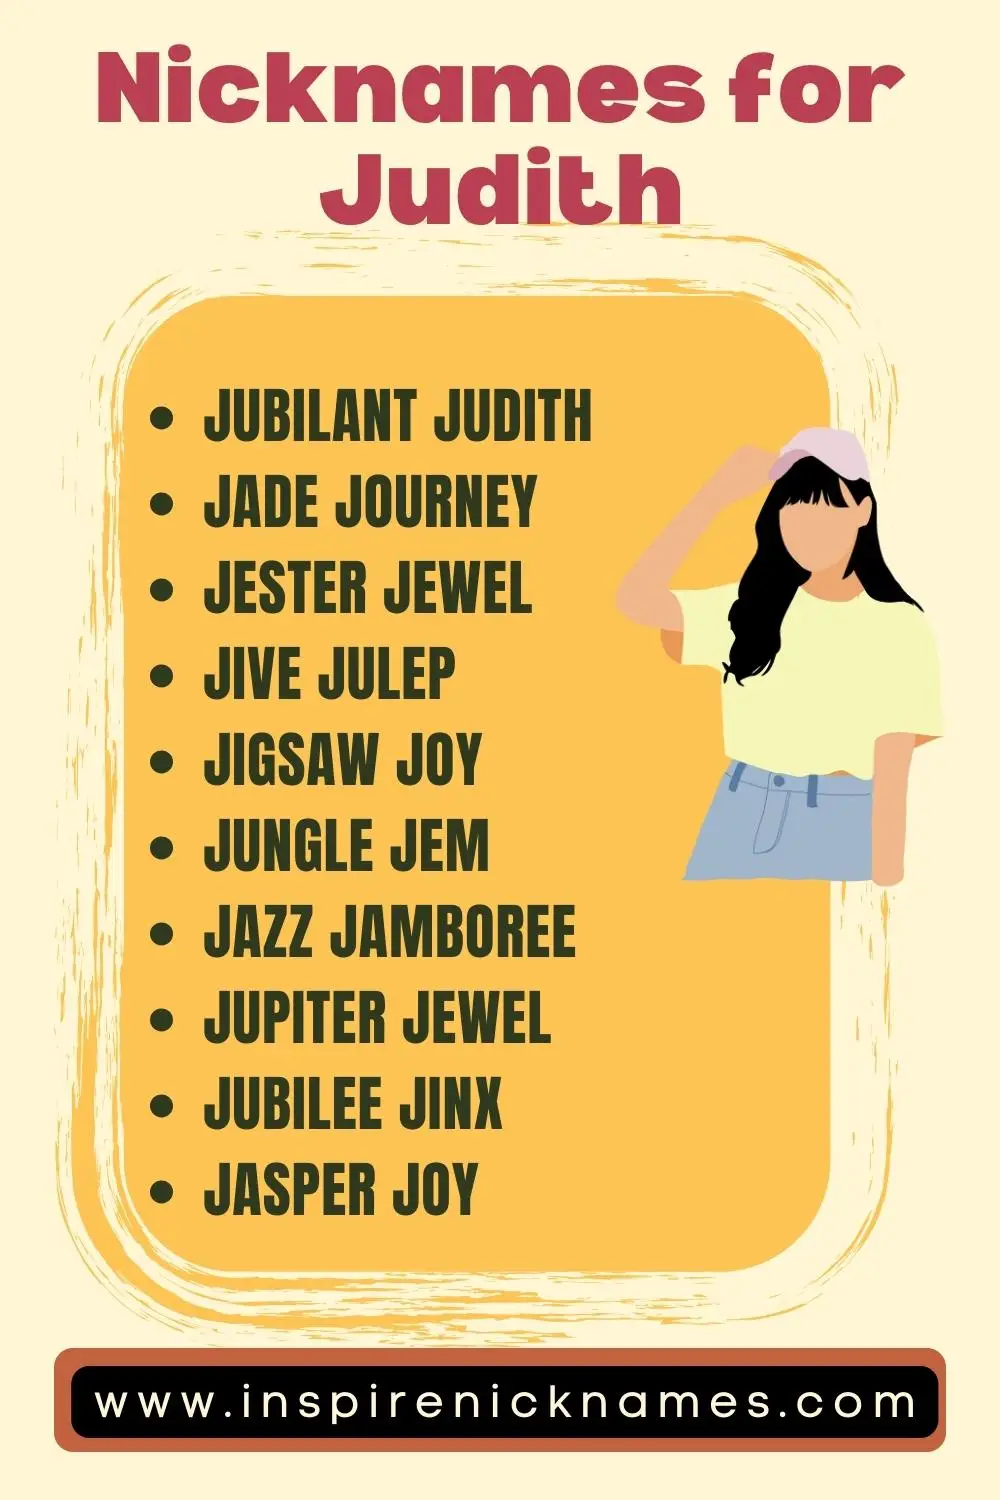 Nicknames for Judith ideas list